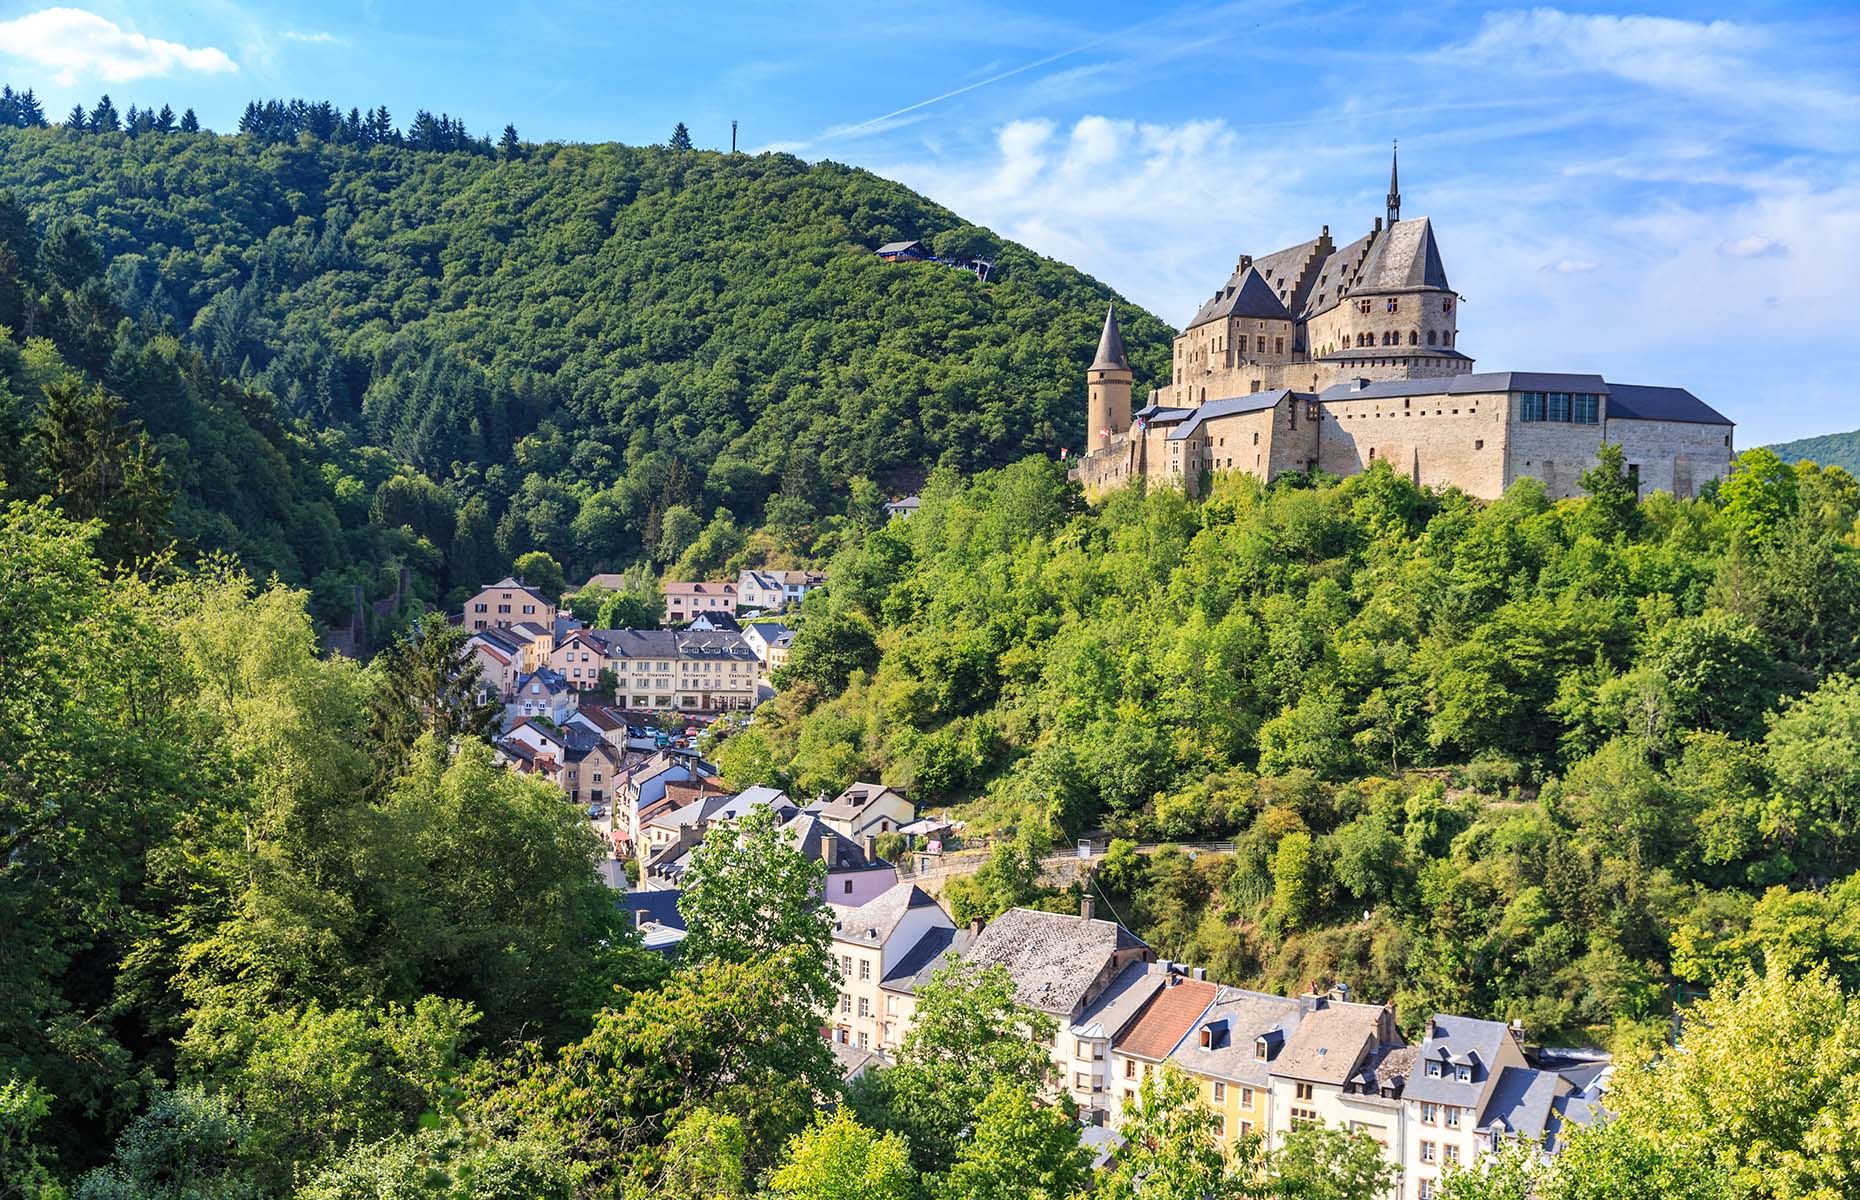 Image: Vianden in Luxembourg (Image: Pigprox/Shutterstock)